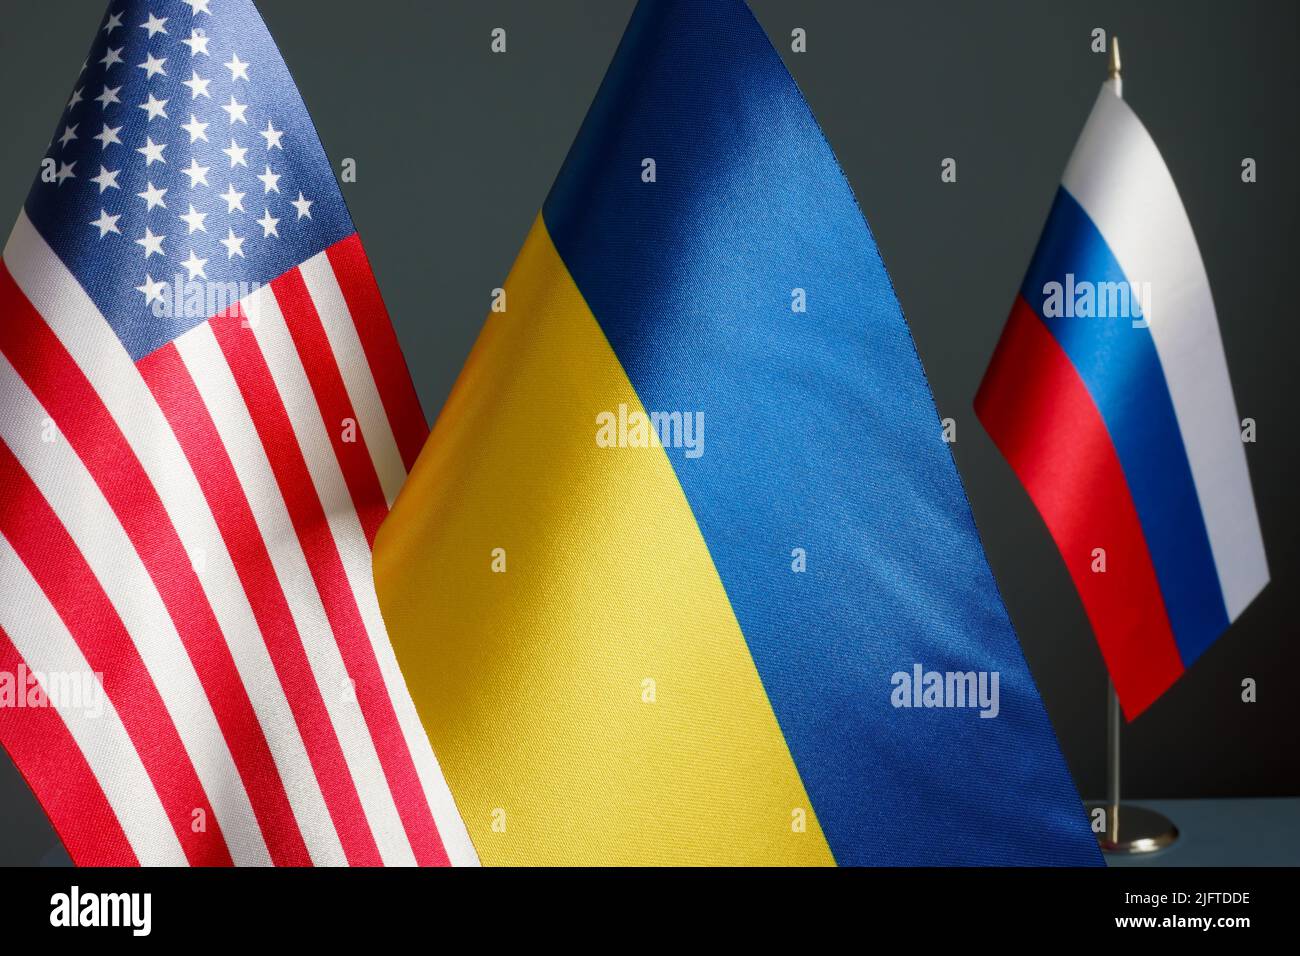 In der Nähe der Flaggen der USA und der Ukraine und der Flagge Russlands. Stockfoto